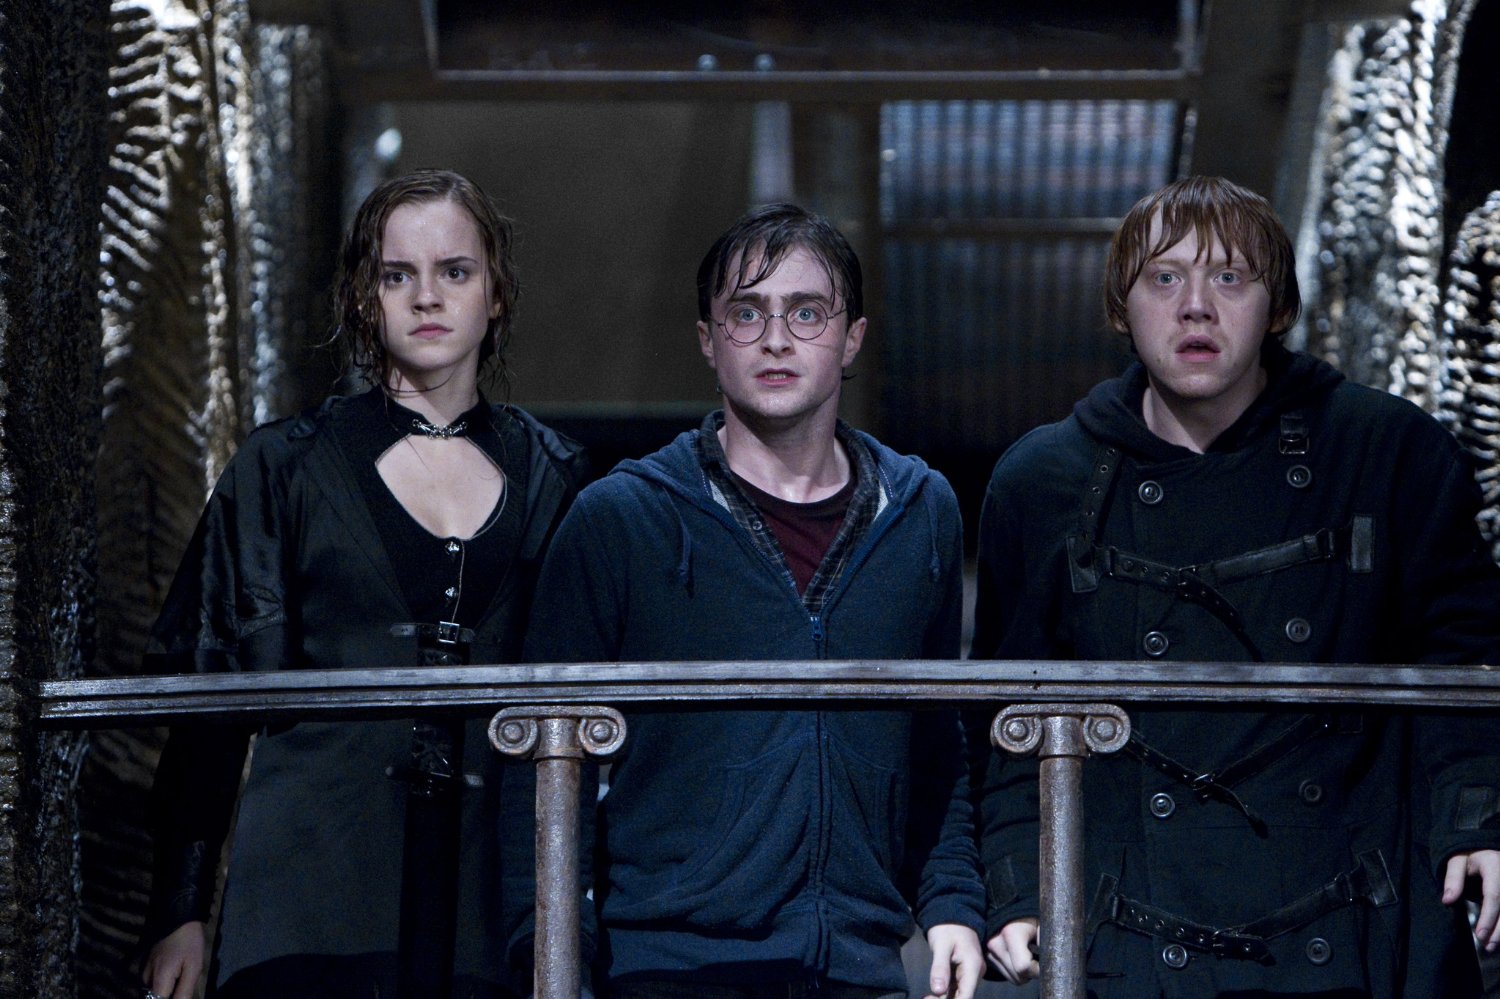  Harry Potter Et Les Reliques De La Mort - Partie 2 de David Yates - 2011 / Fantastique 